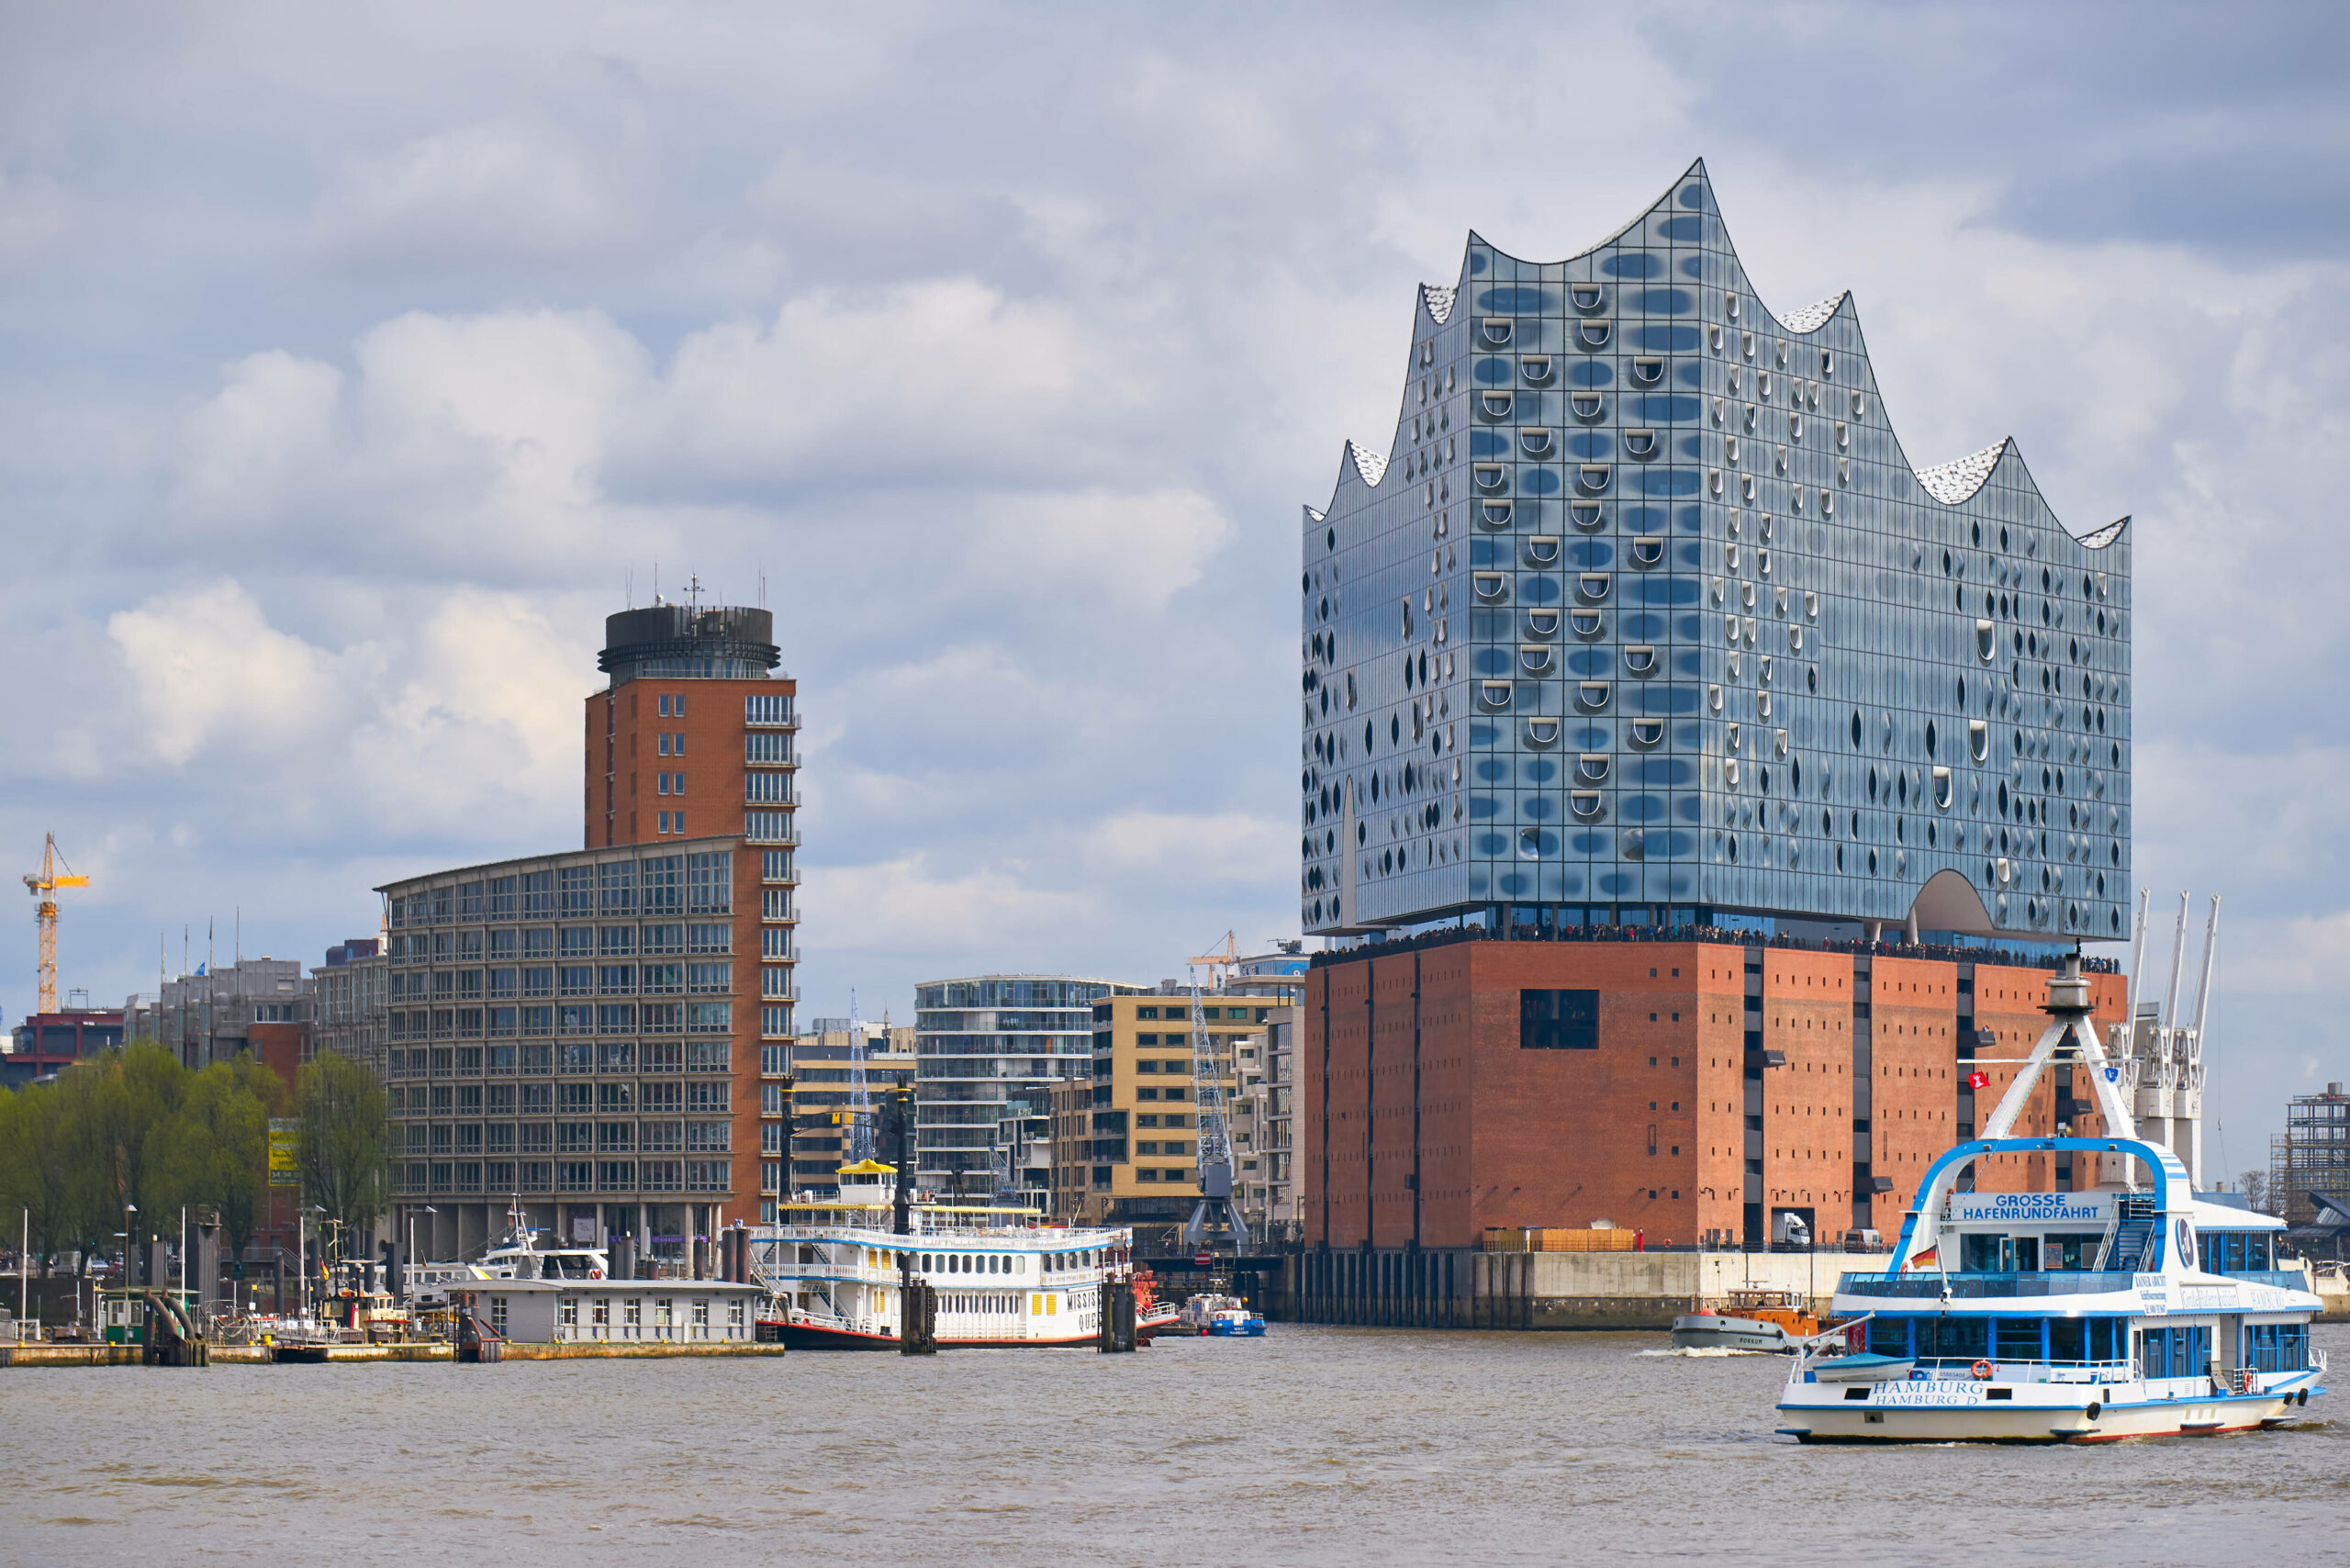 Mal heiter, mal wolkig: Hamburg steht am Wochenende durchwachsenes Wetter bevor – typisch April eben.